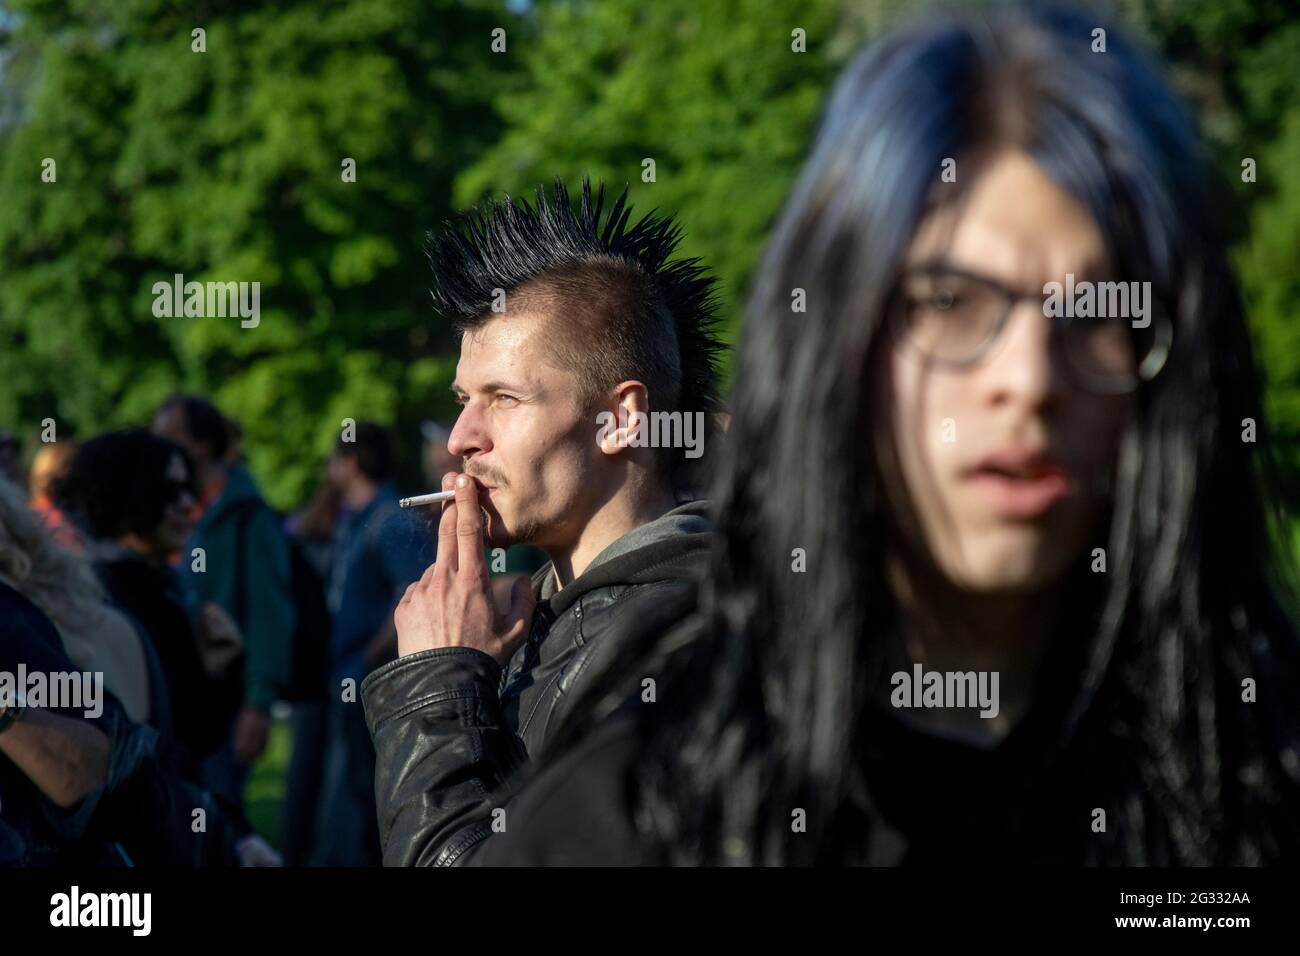 Moscou, Russie. 1er juin 2021 rencontre traditionnelle des fans de la sous-culture hippie dans le parc Tsaritsyno de Moscou, Russie. Plusieurs dizaines de personnes de différentes sous-cultures prennent des parties de l'air libre pour profiter des arts alternatifs et de la musique Banque D'Images